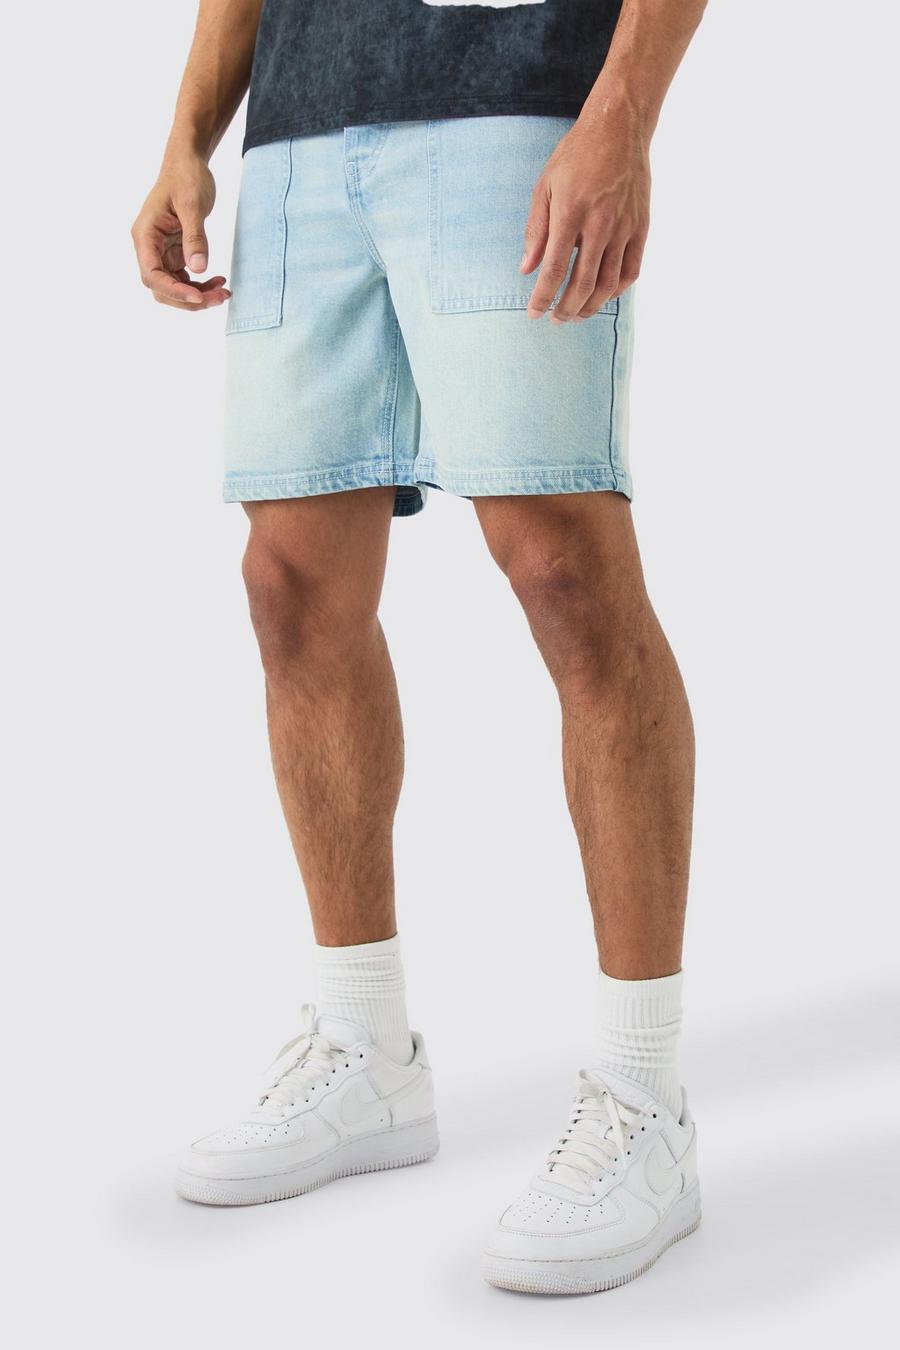 Pantalón corto vaquero holgado sin tratar con costuras en contraste, Light blue